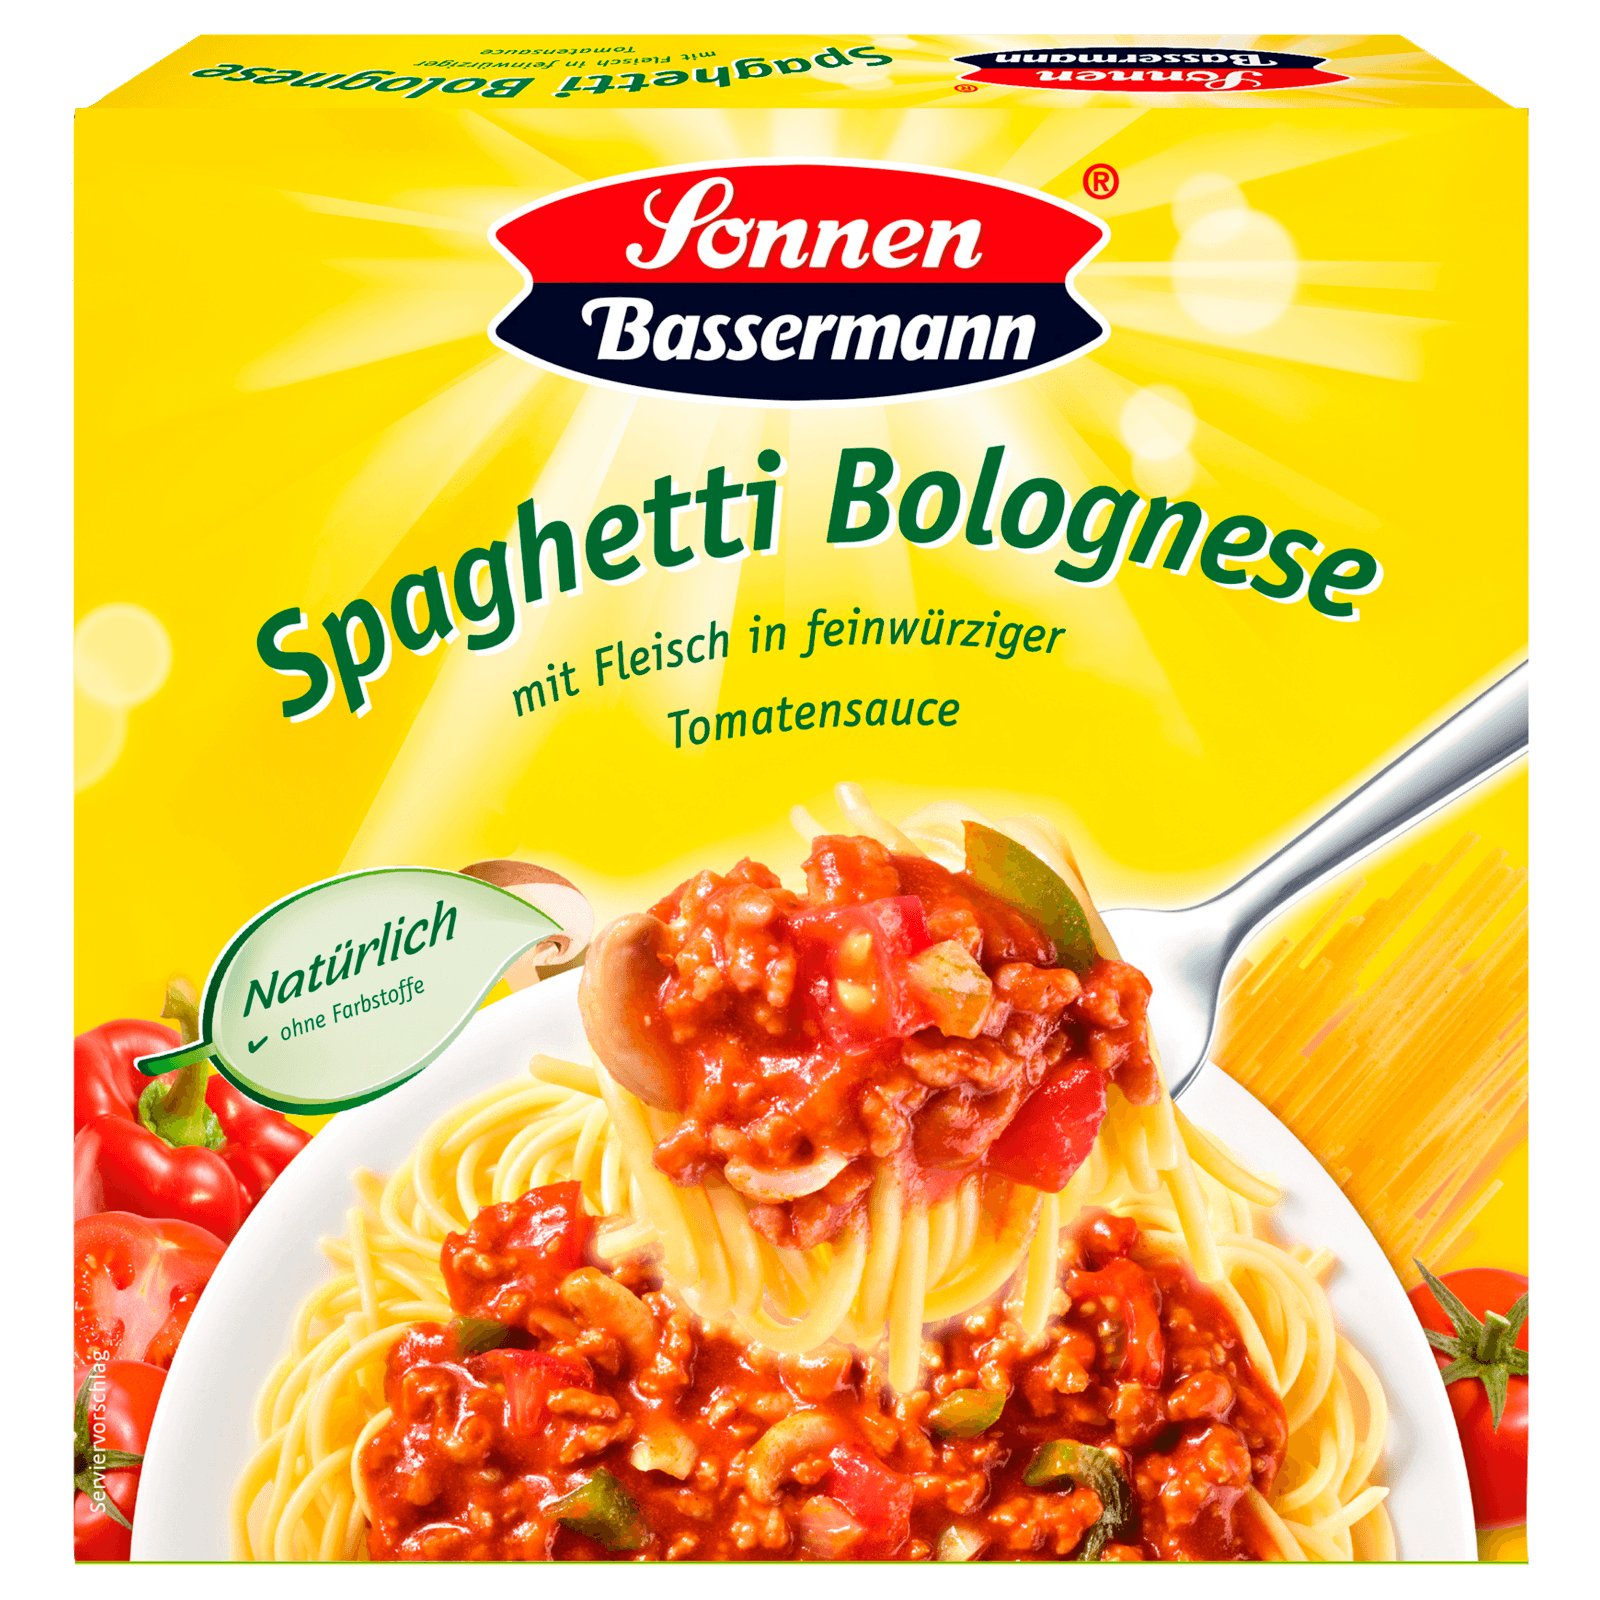 Sonnen Bassermann Spaghetti Bolognese 375g Bei Rewe Online Bestellen